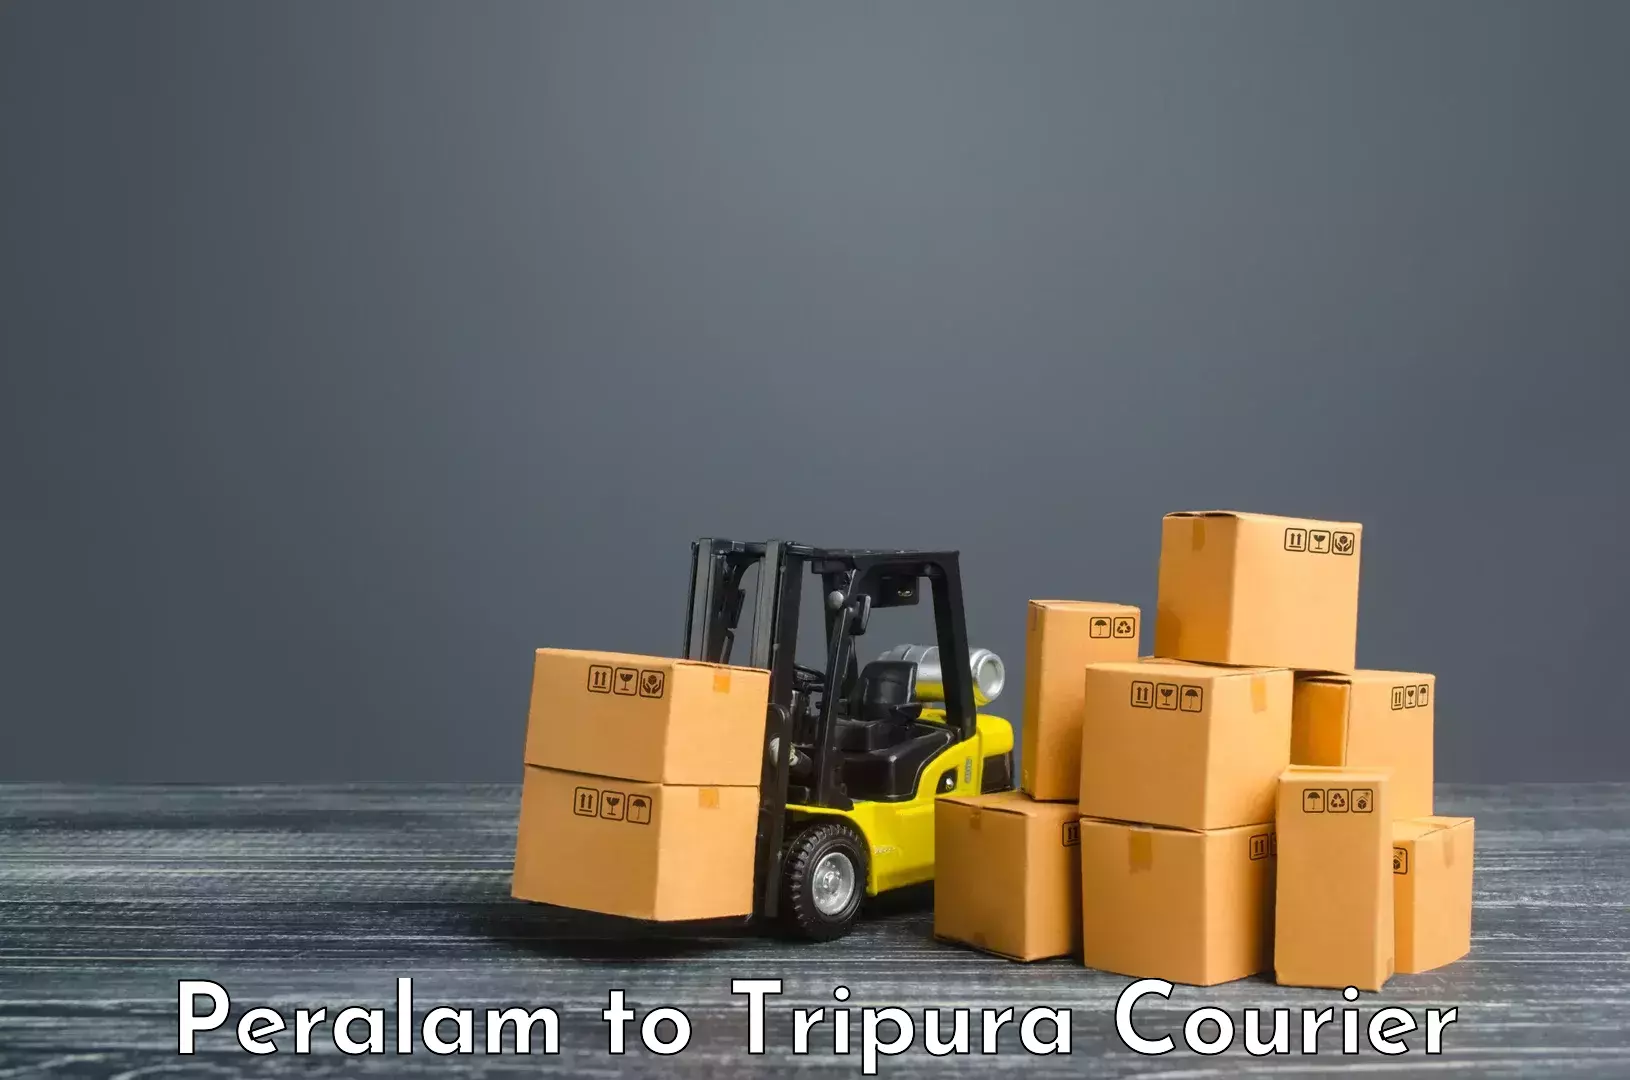 Remote area delivery Peralam to Tripura